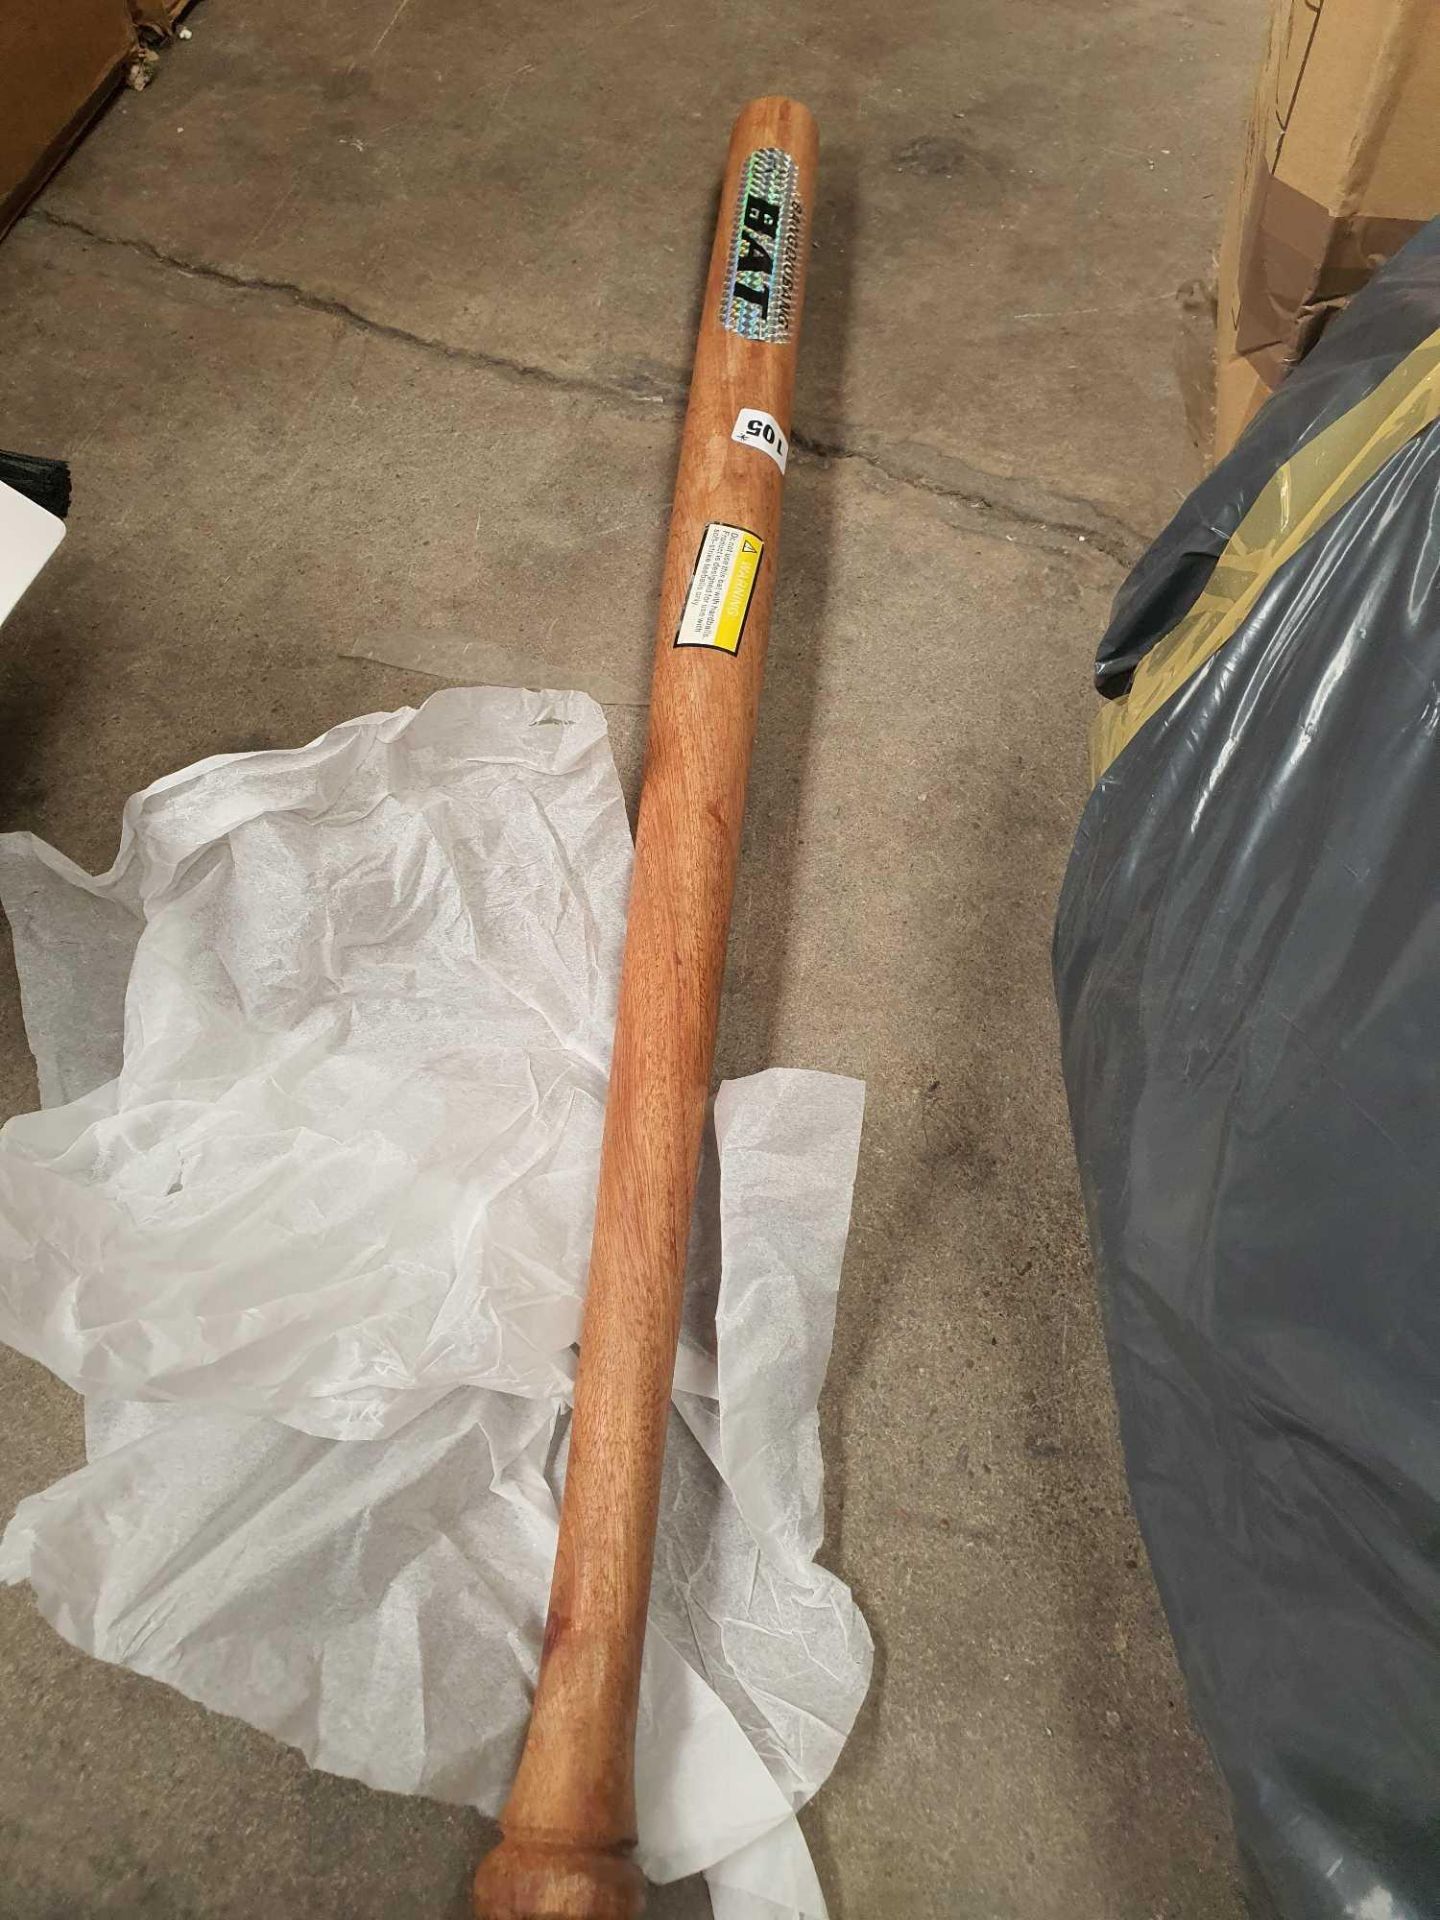 Wooden baseball bat.